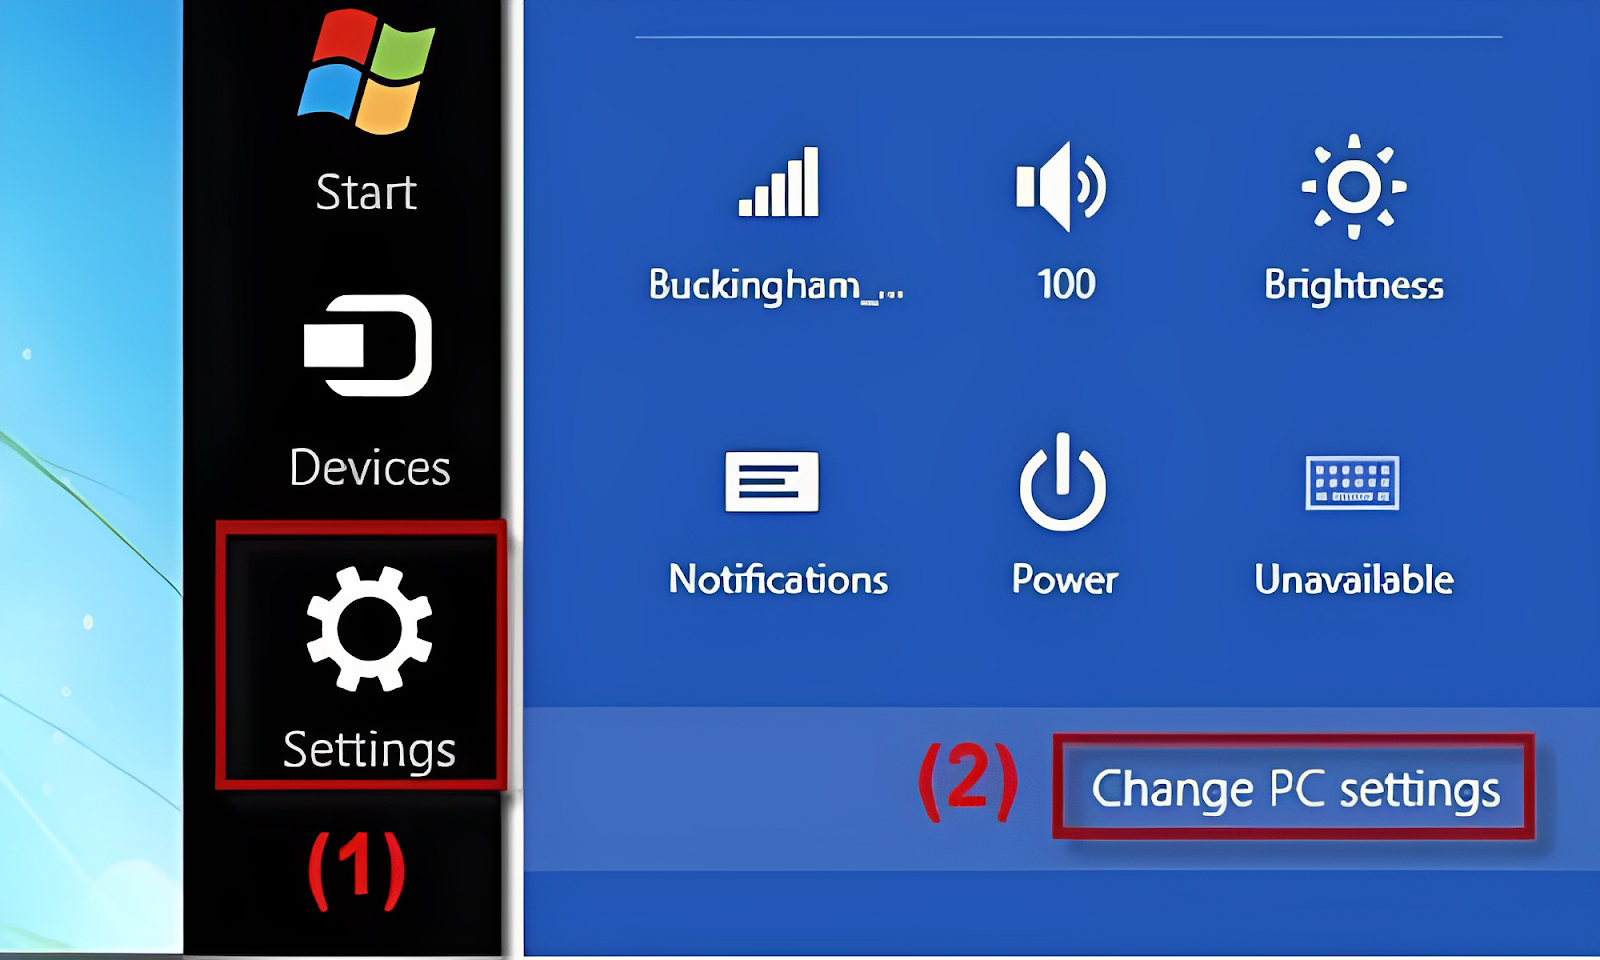 Bạn vào phần Change PC settings để thay đổi cài đặt máy tính của mình 